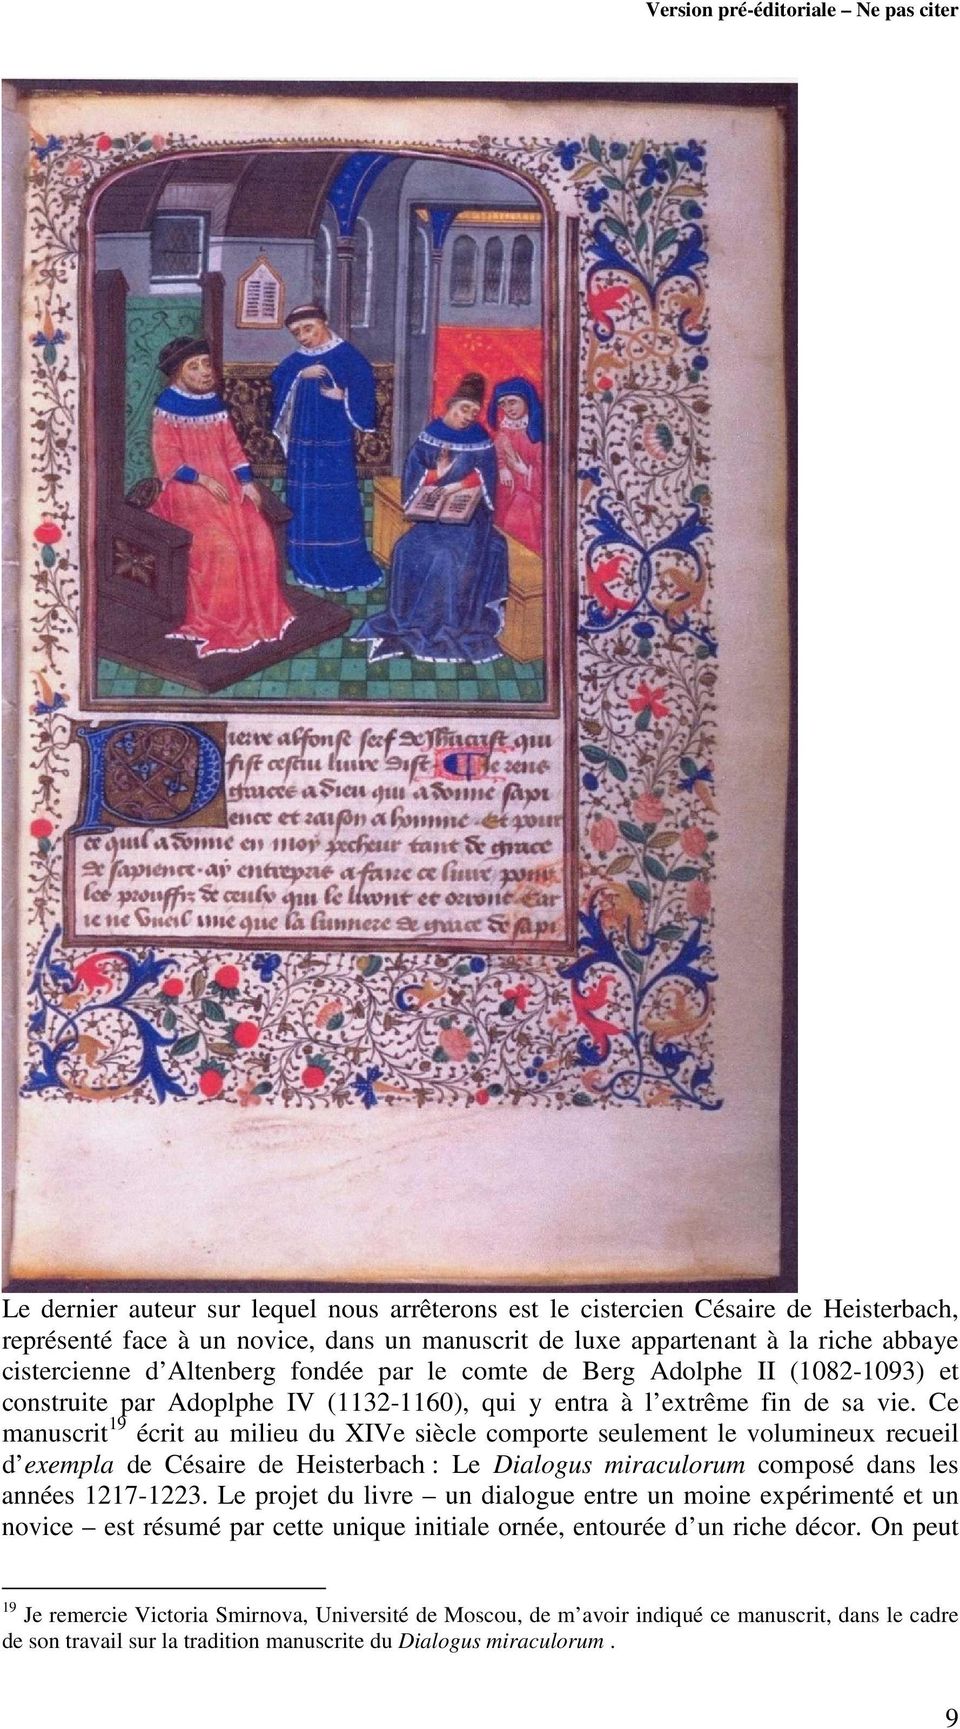 Ce manuscrit 19 écrit au milieu du XIVe siècle comporte seulement le volumineux recueil d exempla de Césaire de Heisterbach : Le Dialogus miraculorum composé dans les années 1217-1223.